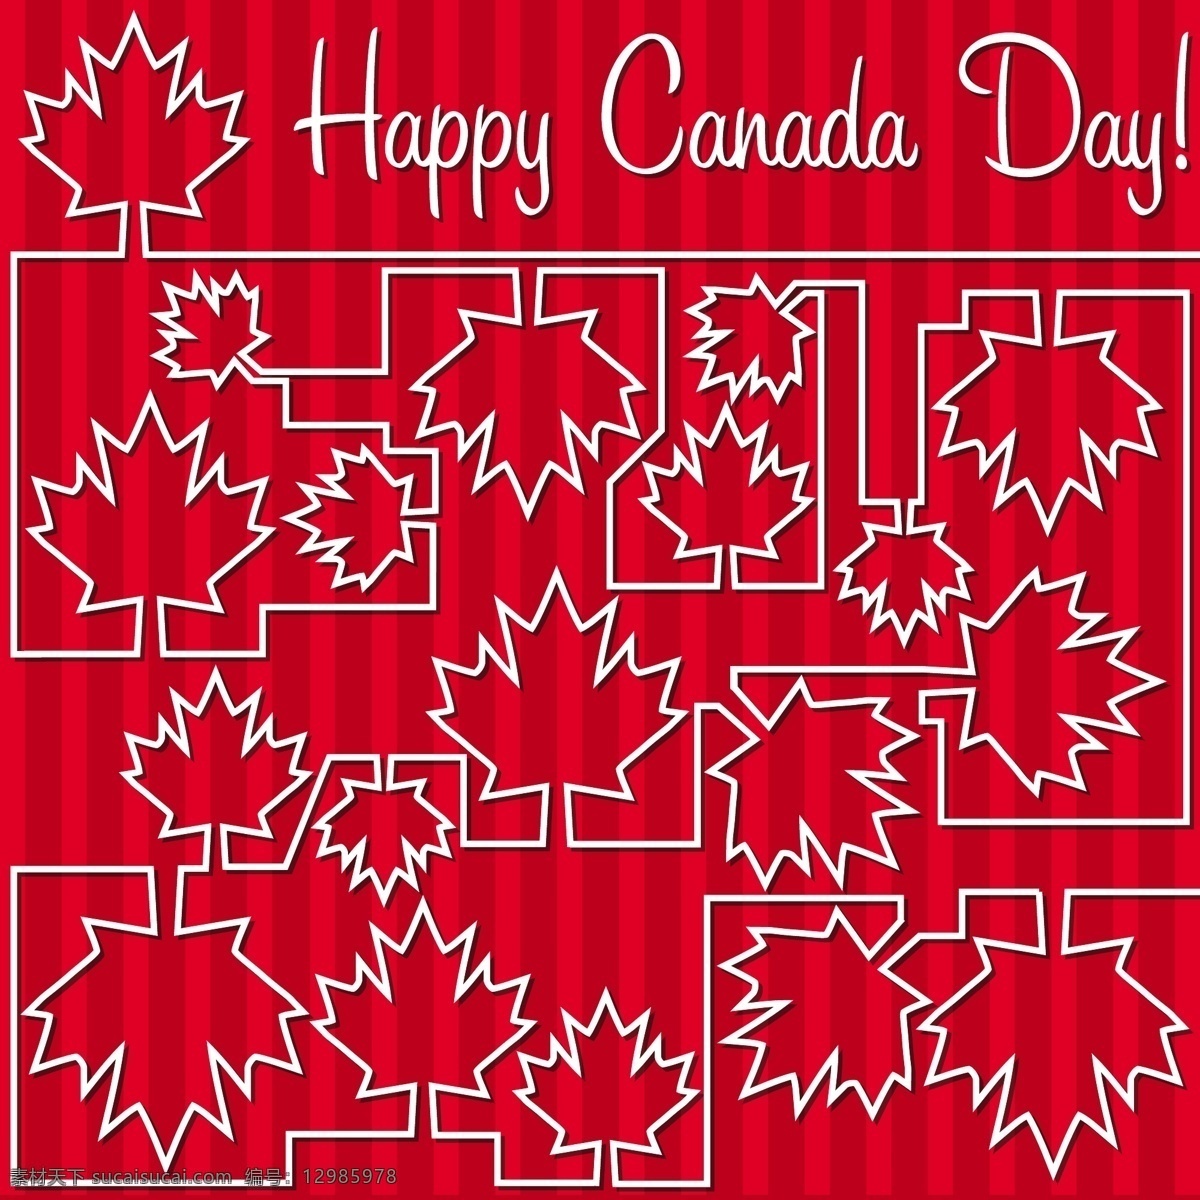 枫叶 迷宫 加拿大 国庆节 快乐 卡 矢量 格式 矢量图 日常生活